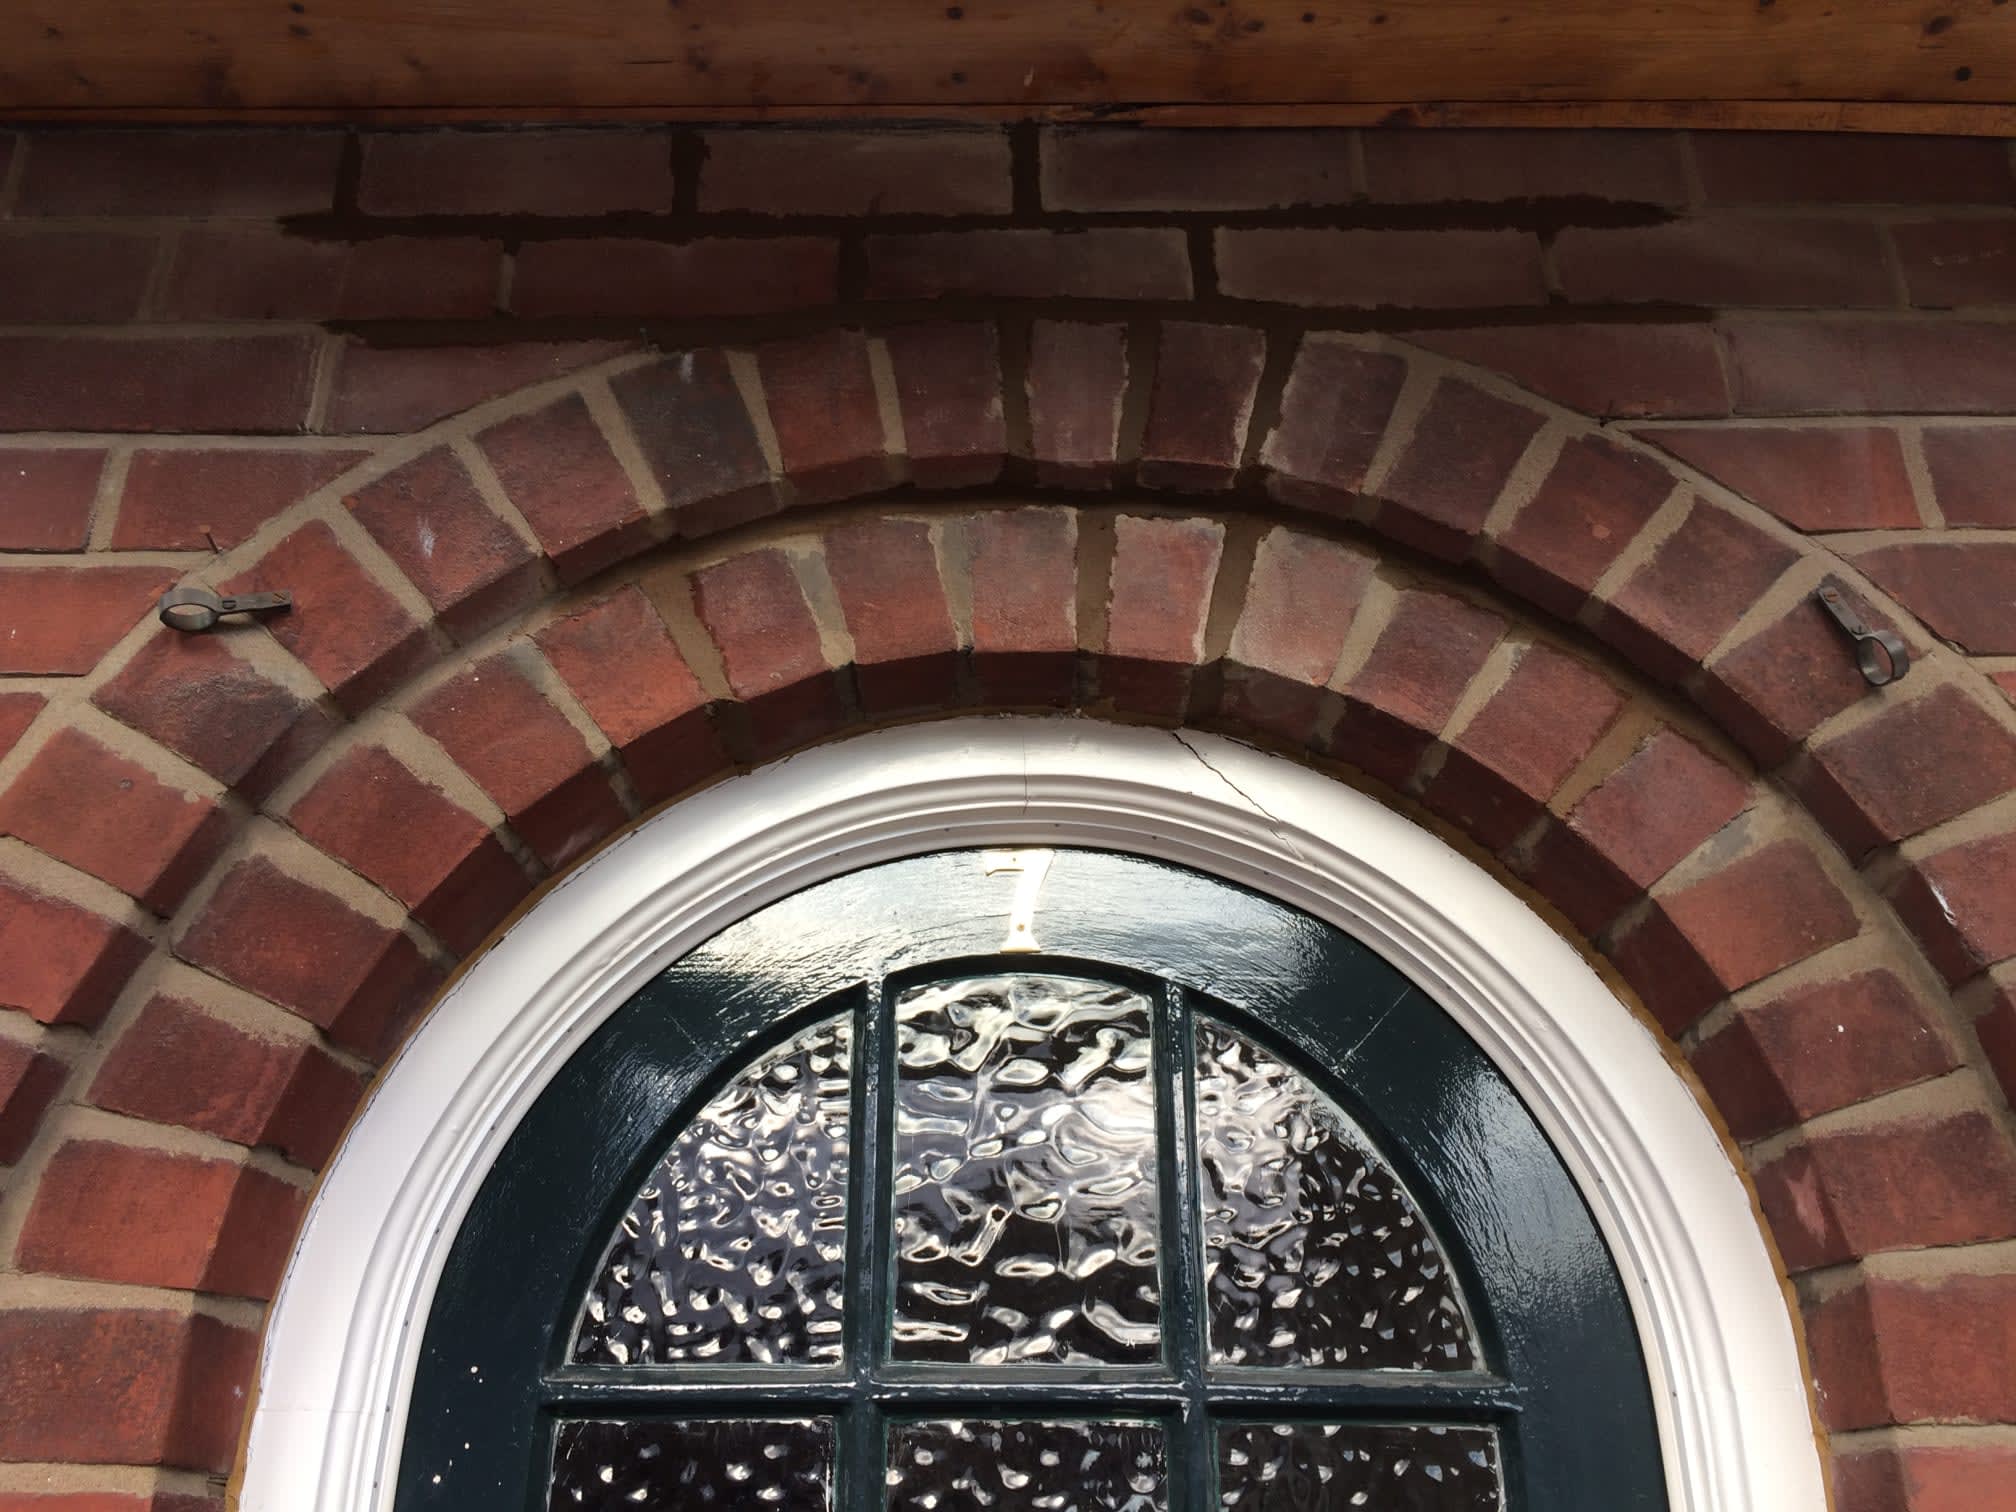 Images Brickwork & Stone Repair & Repointing